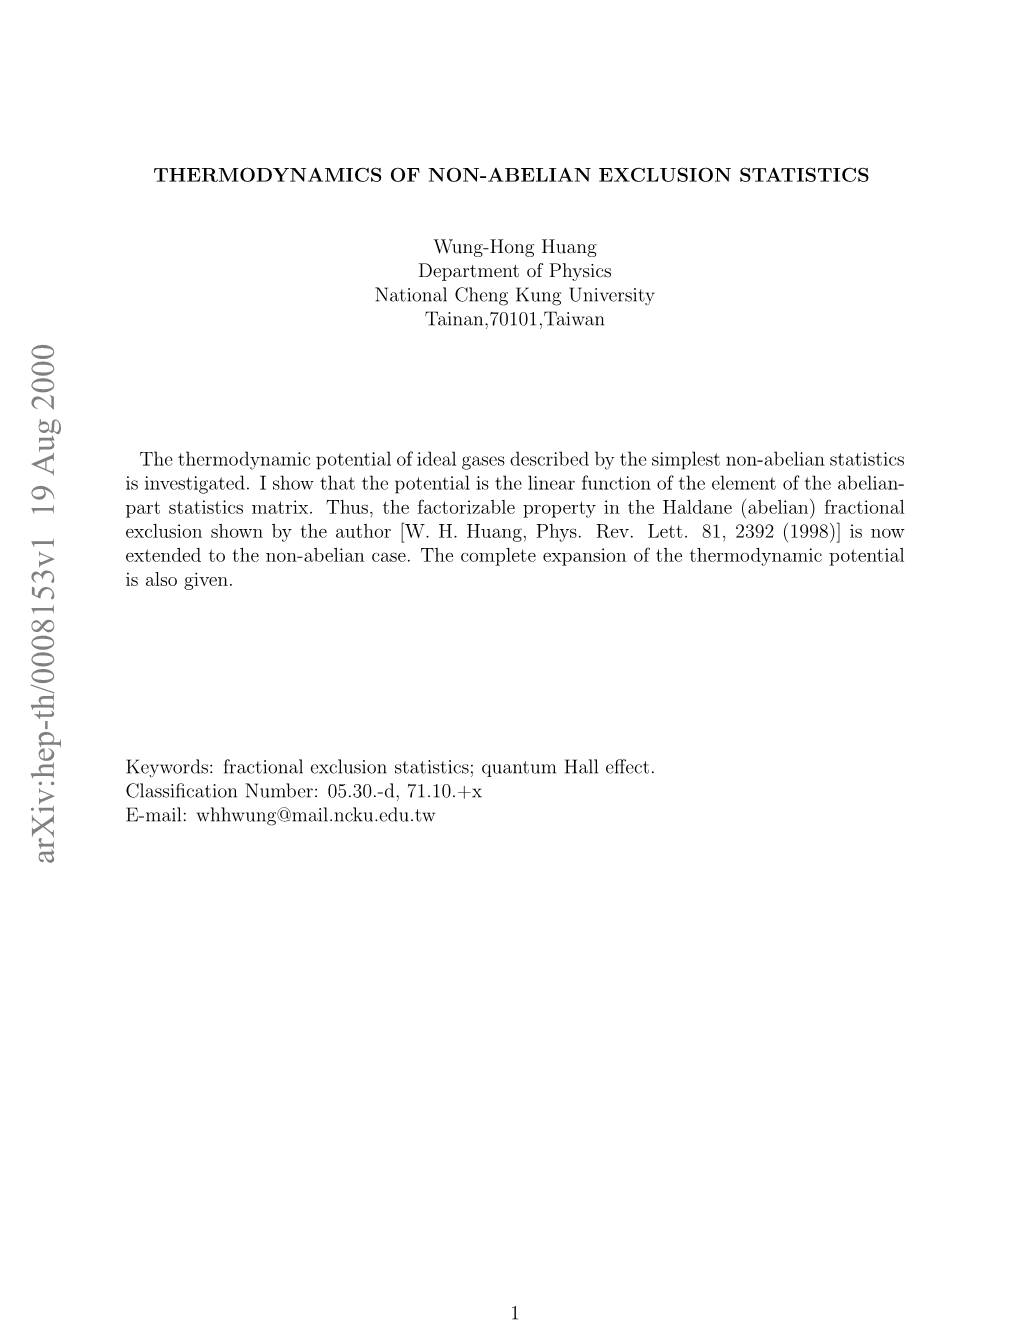 Thermodynamics of Non-Abelian Exclusion Statistics